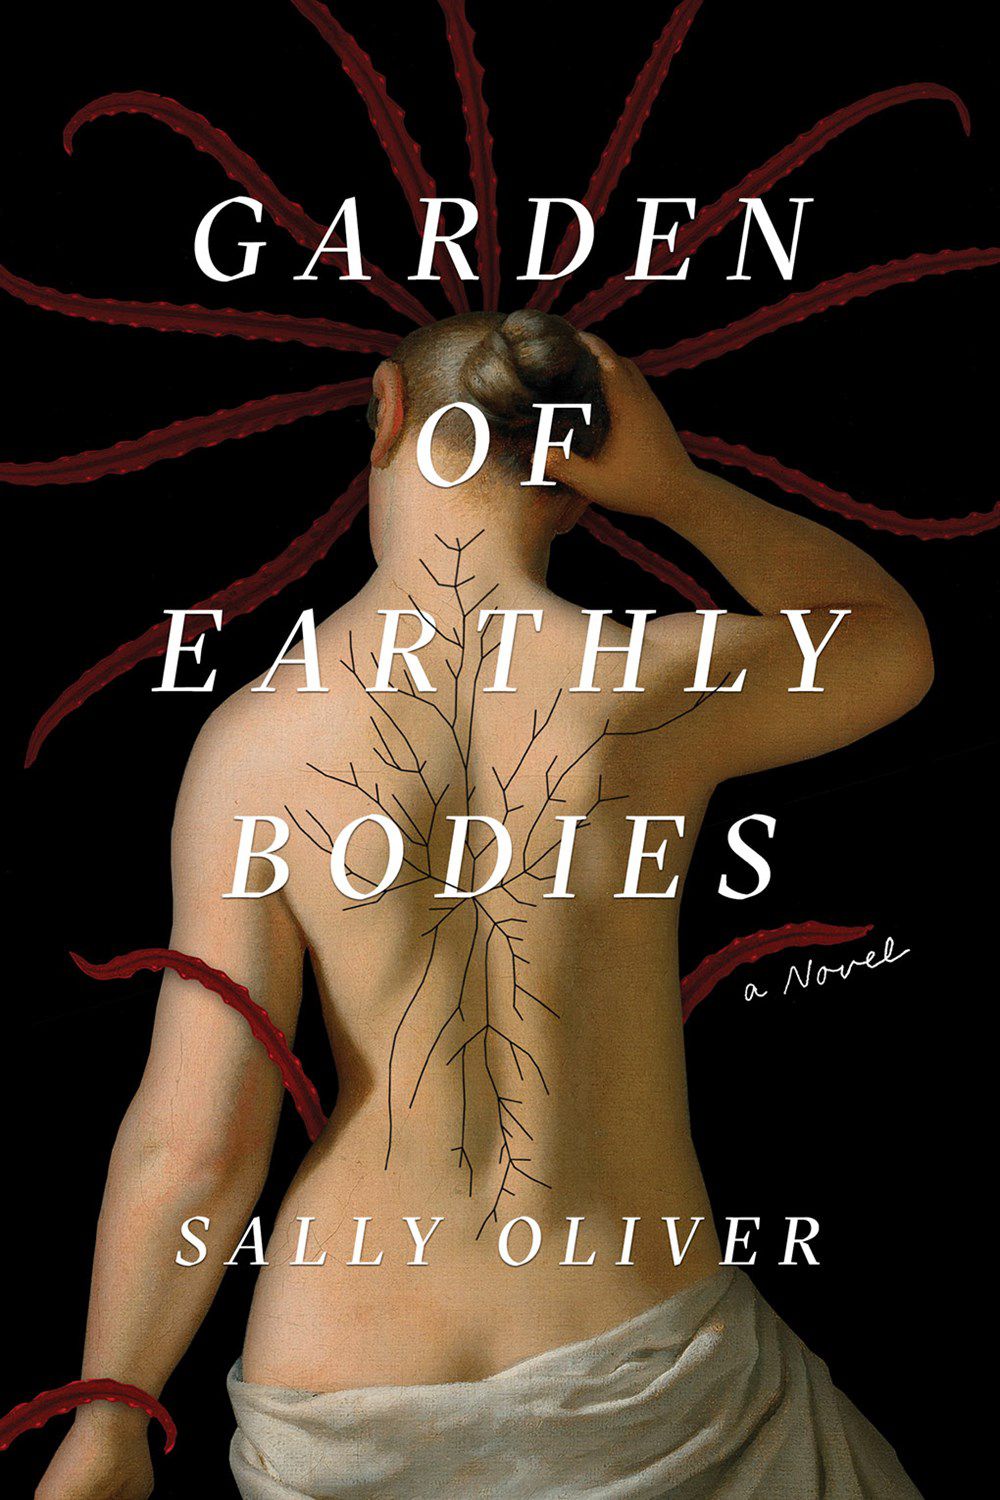 Immagine di copertina di Garden of Earthly Bodies di Sally Oliver, con una donna con la schiena scoperta e i capelli che crescono lungo la spina dorsale.  Inoltre, potenzialmente tentacoli!